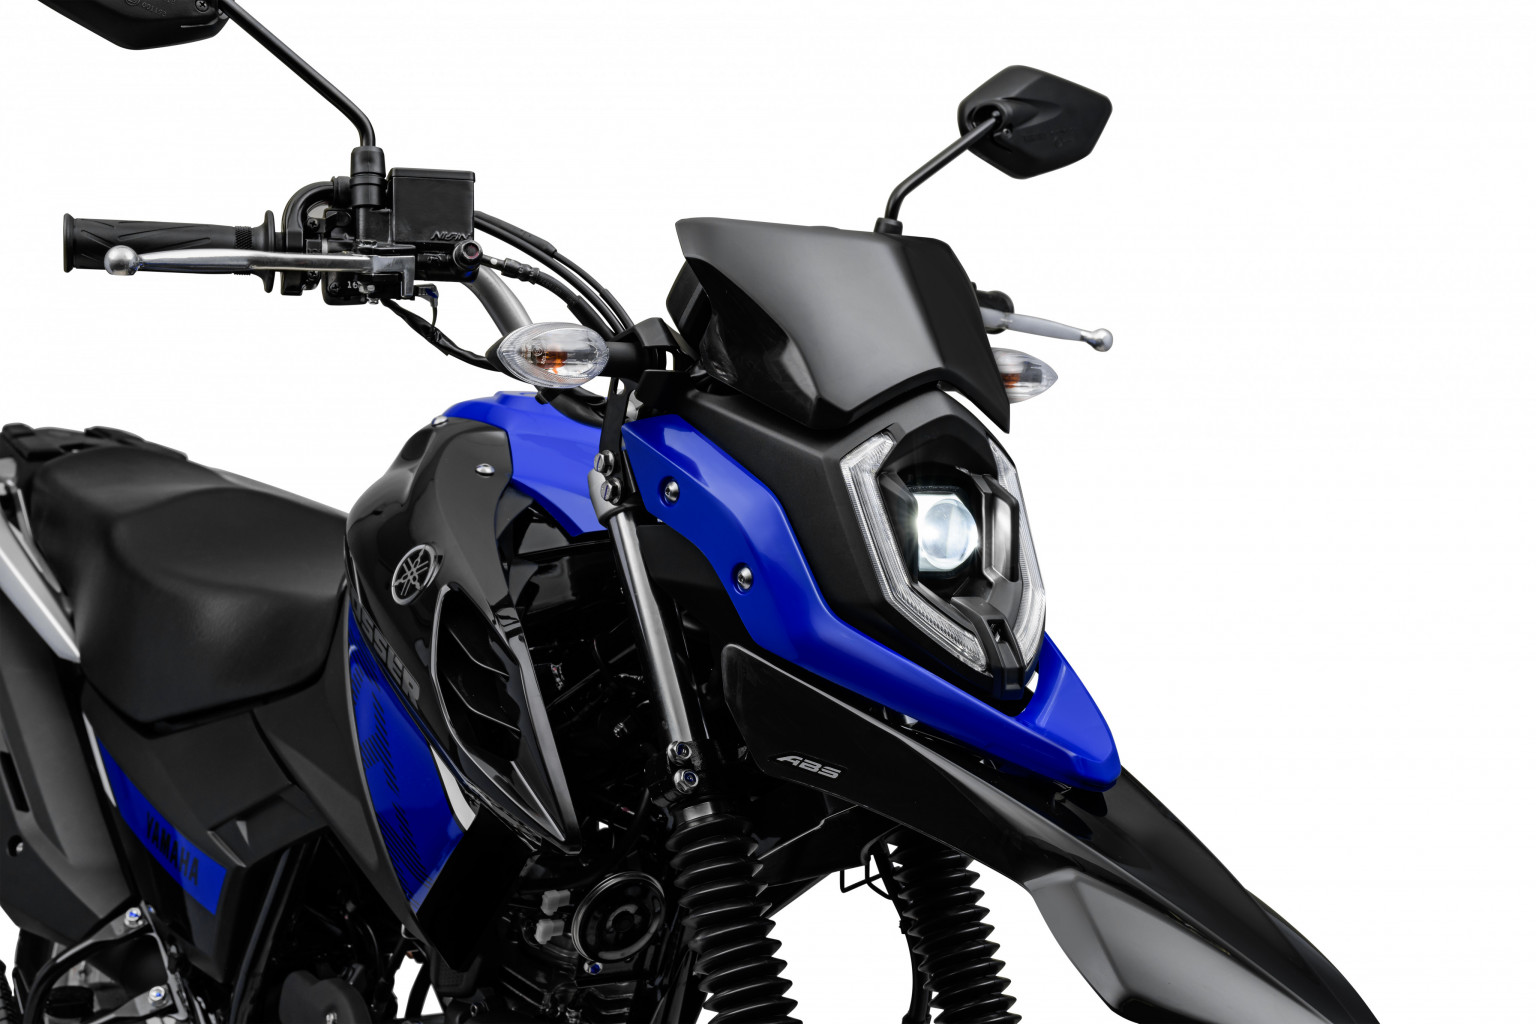 Yamaha lança XTZ 150 Crosser e nós já avaliamos, confira! - moto.com.br